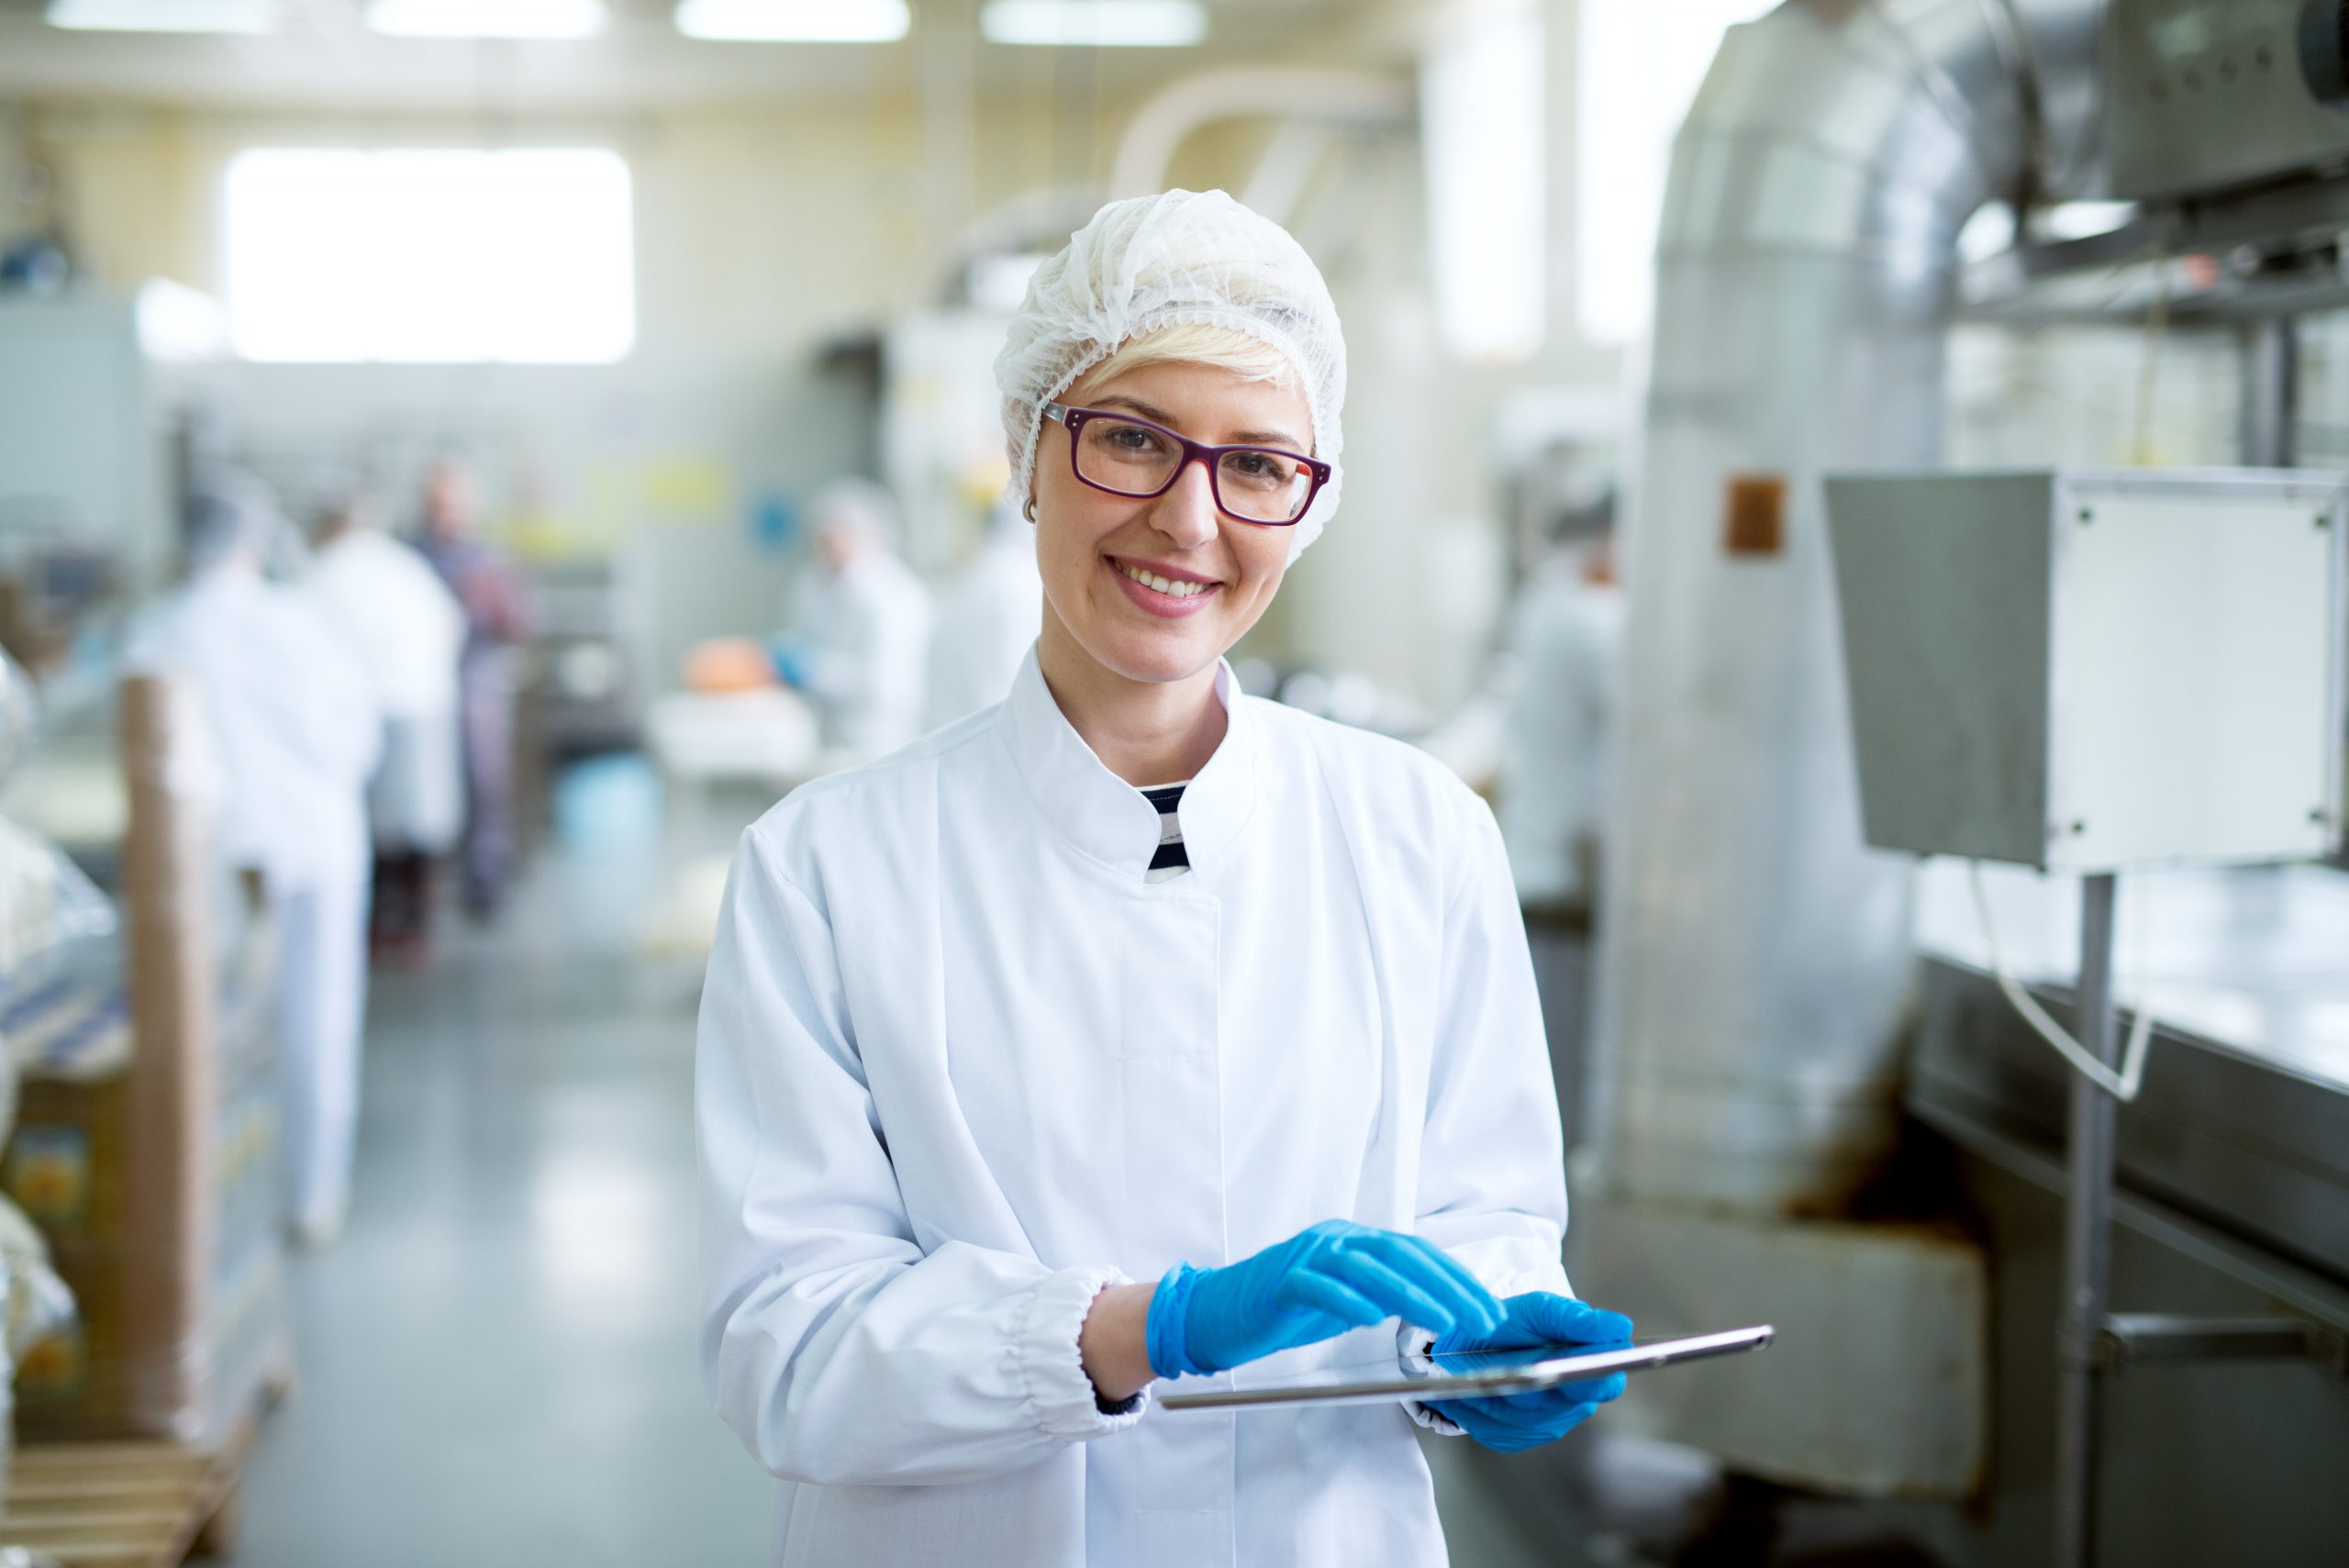 Food scientist in lab coat